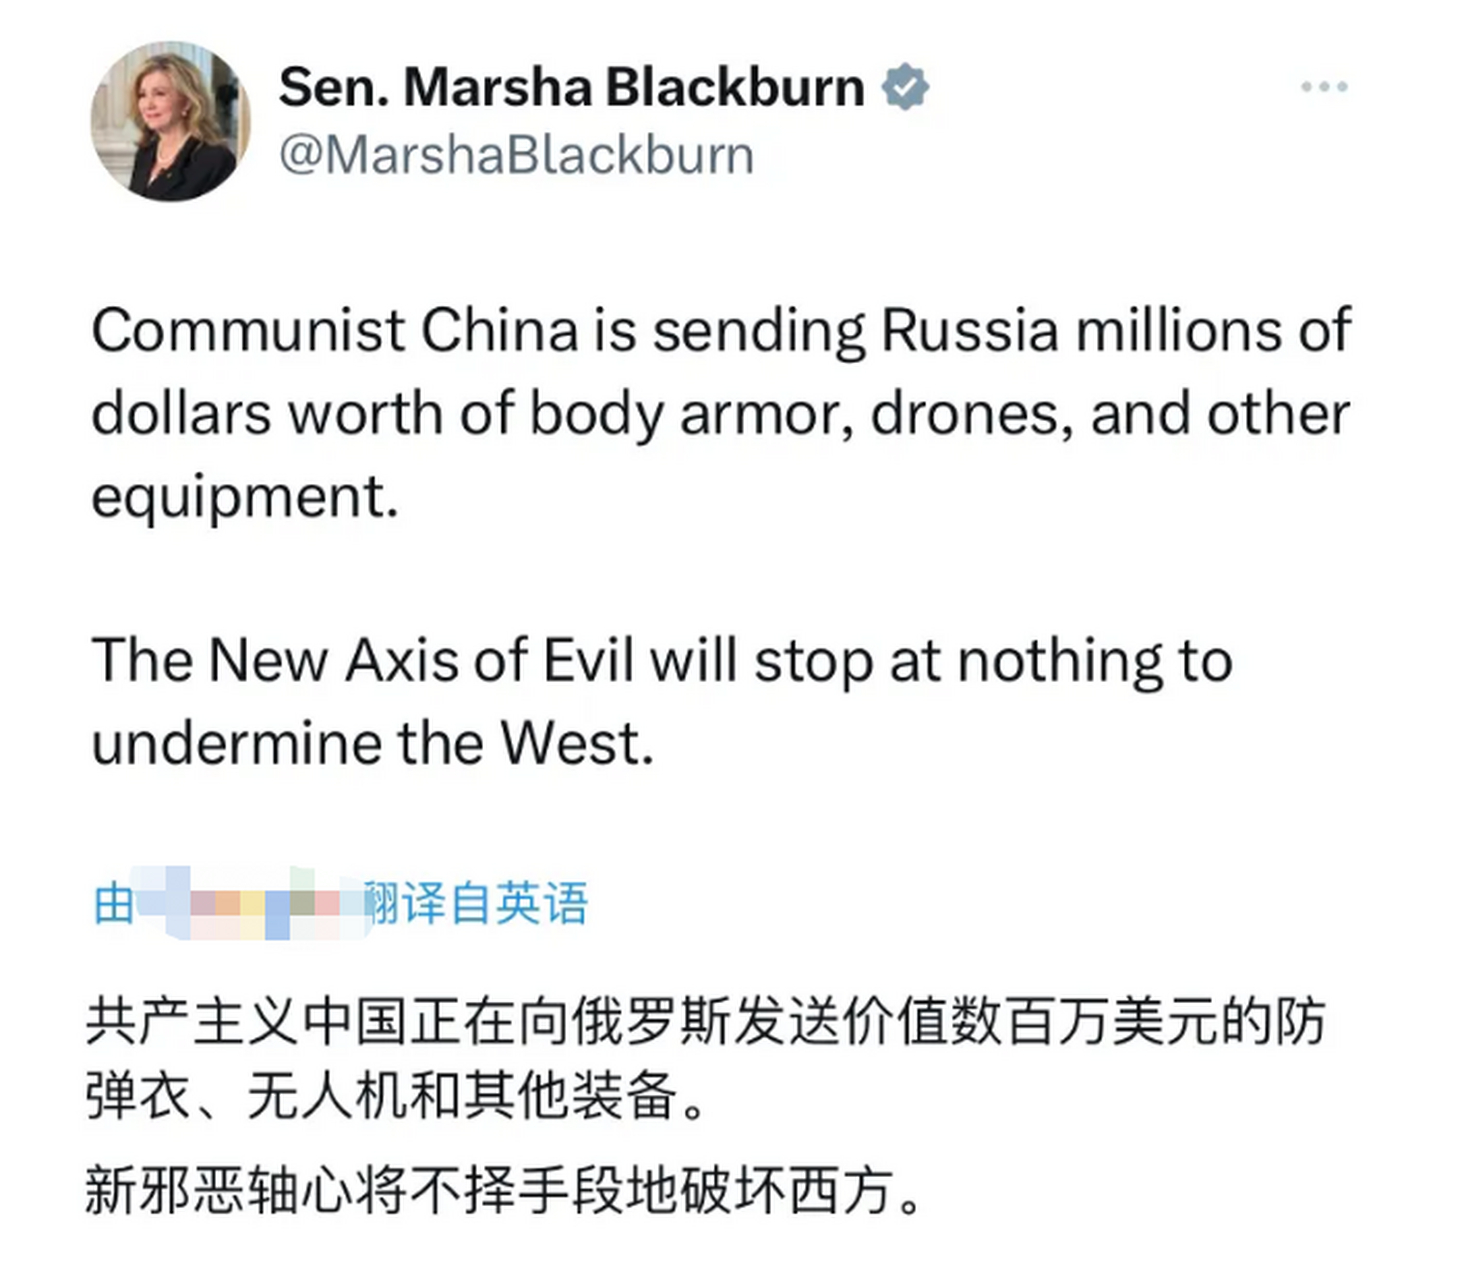 美国共和党籍参议员玛莎·布莱克本:中国正在向俄罗斯提供价值数百万